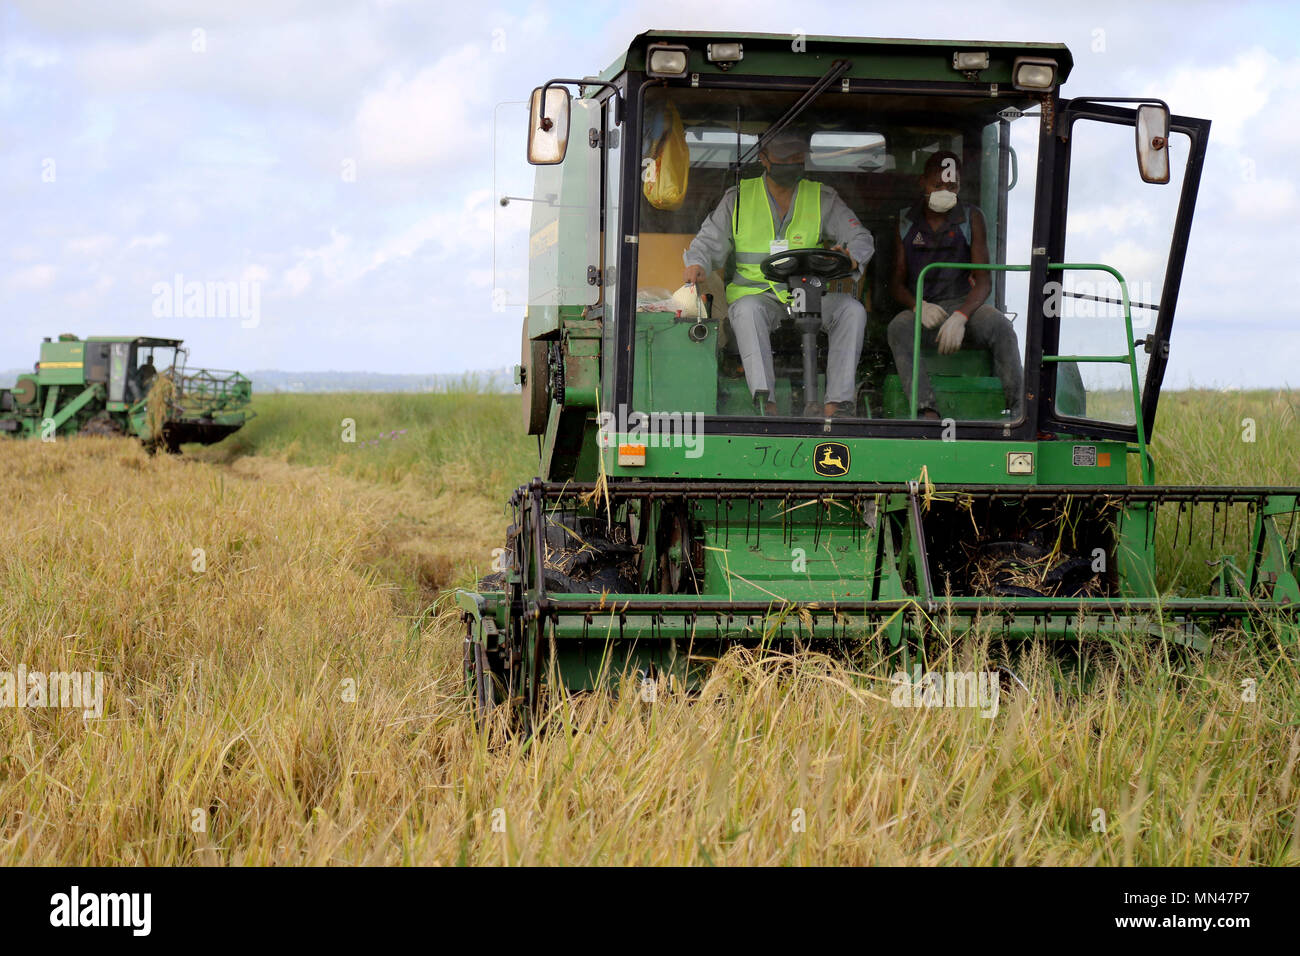 (180514) - Gaza (Mosambik), 14. Mai 2018 (Xinhua) - ein Harvester Works im Reisfeld von Wanbao Reis Bauernhof in der Provinz Gaza, Mosambik, April 4, 2018. Der Wanbao Mosambik Reis Farm, die von der China-Afrika-Entwicklungsfonds investiert wird, ist die größte ihrer Art, die von China in Afrika durchgeführt. Das Projekt, das eine umfassende Business, das Plantation, Lagerung, Verarbeitung und Vertrieb, zielt darauf ab, 20.000 Hektar Ackerland zu entwickeln, und die Bauern in der Umgebung Pflanzen über eine 80.000 Hektar wachsen führen. (Xinhua) (sxk) Stockfoto